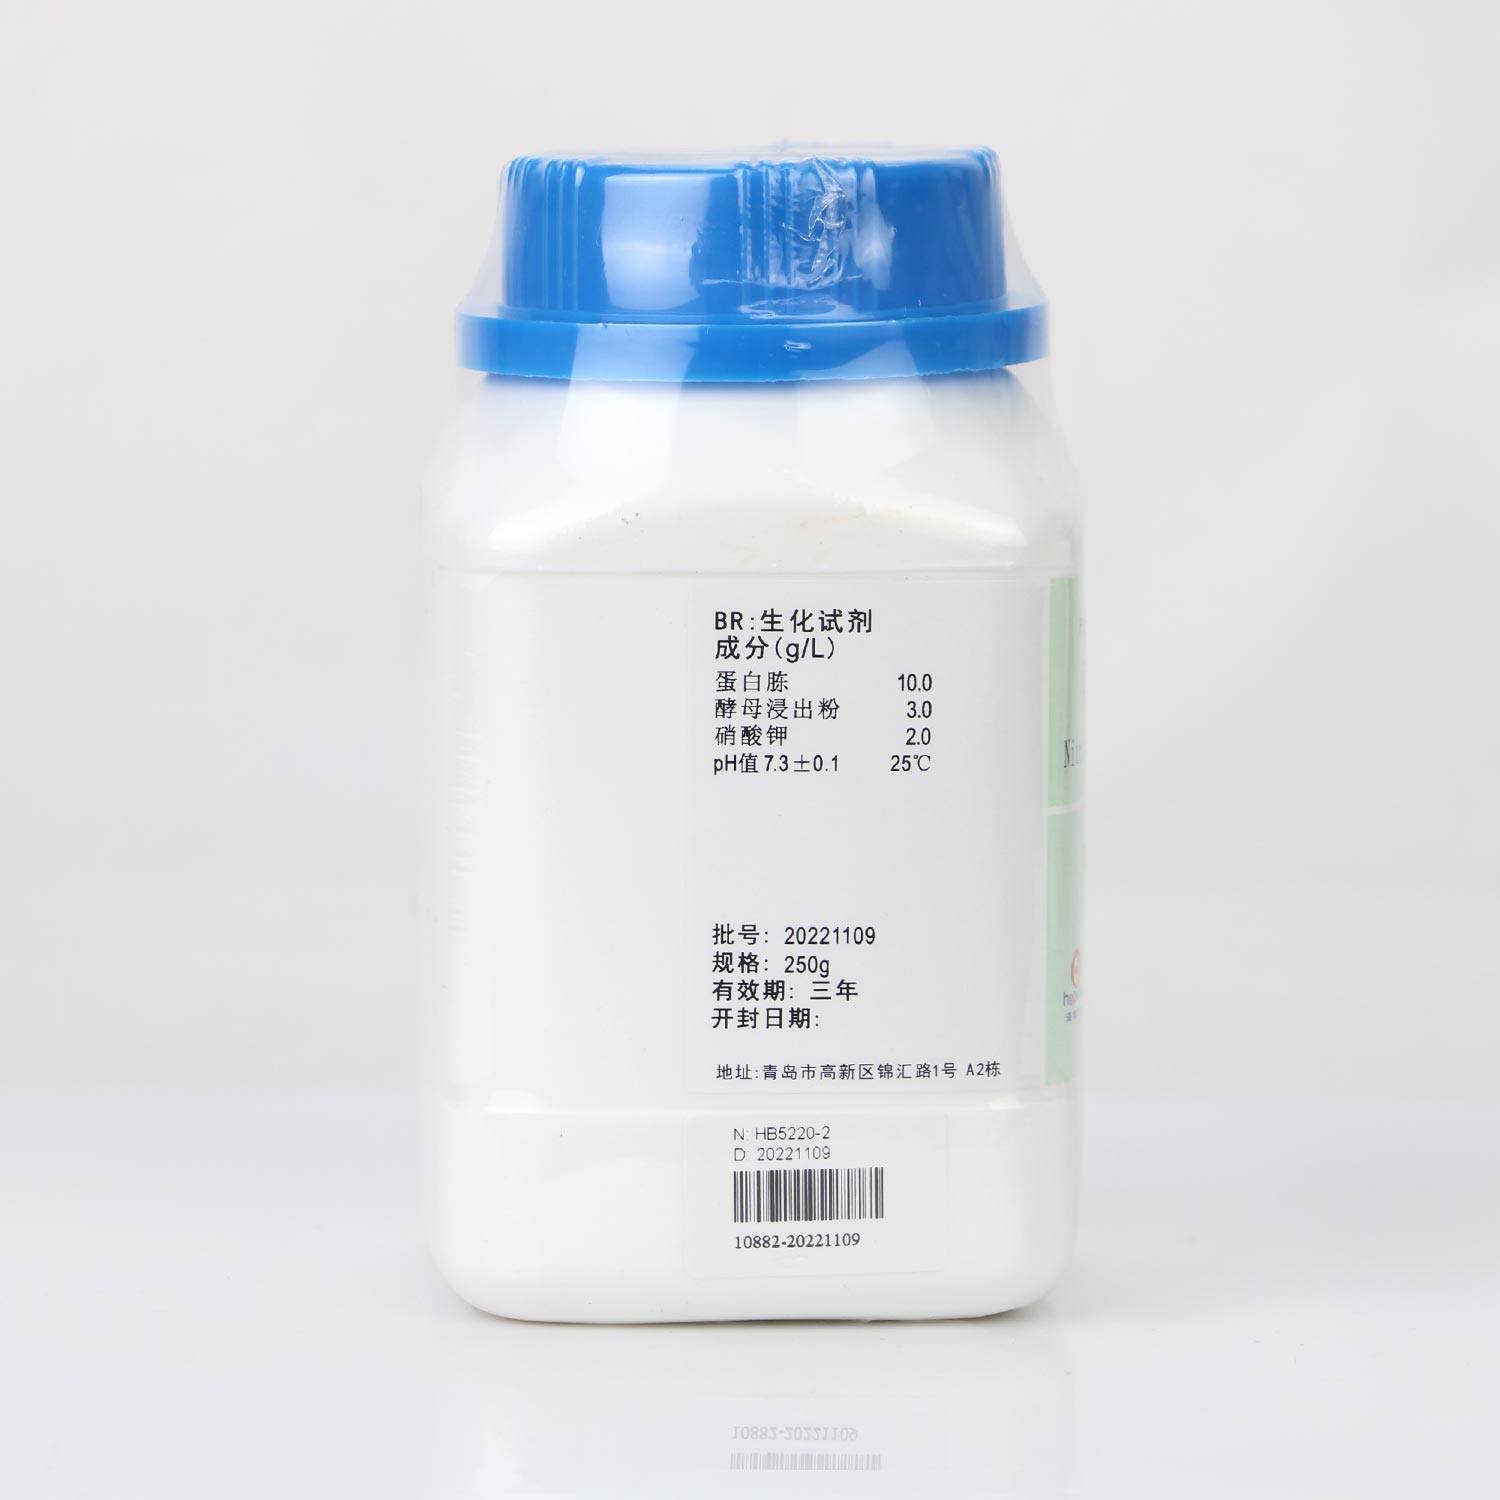 硝酸盐胨水培养基(中国药典)配方